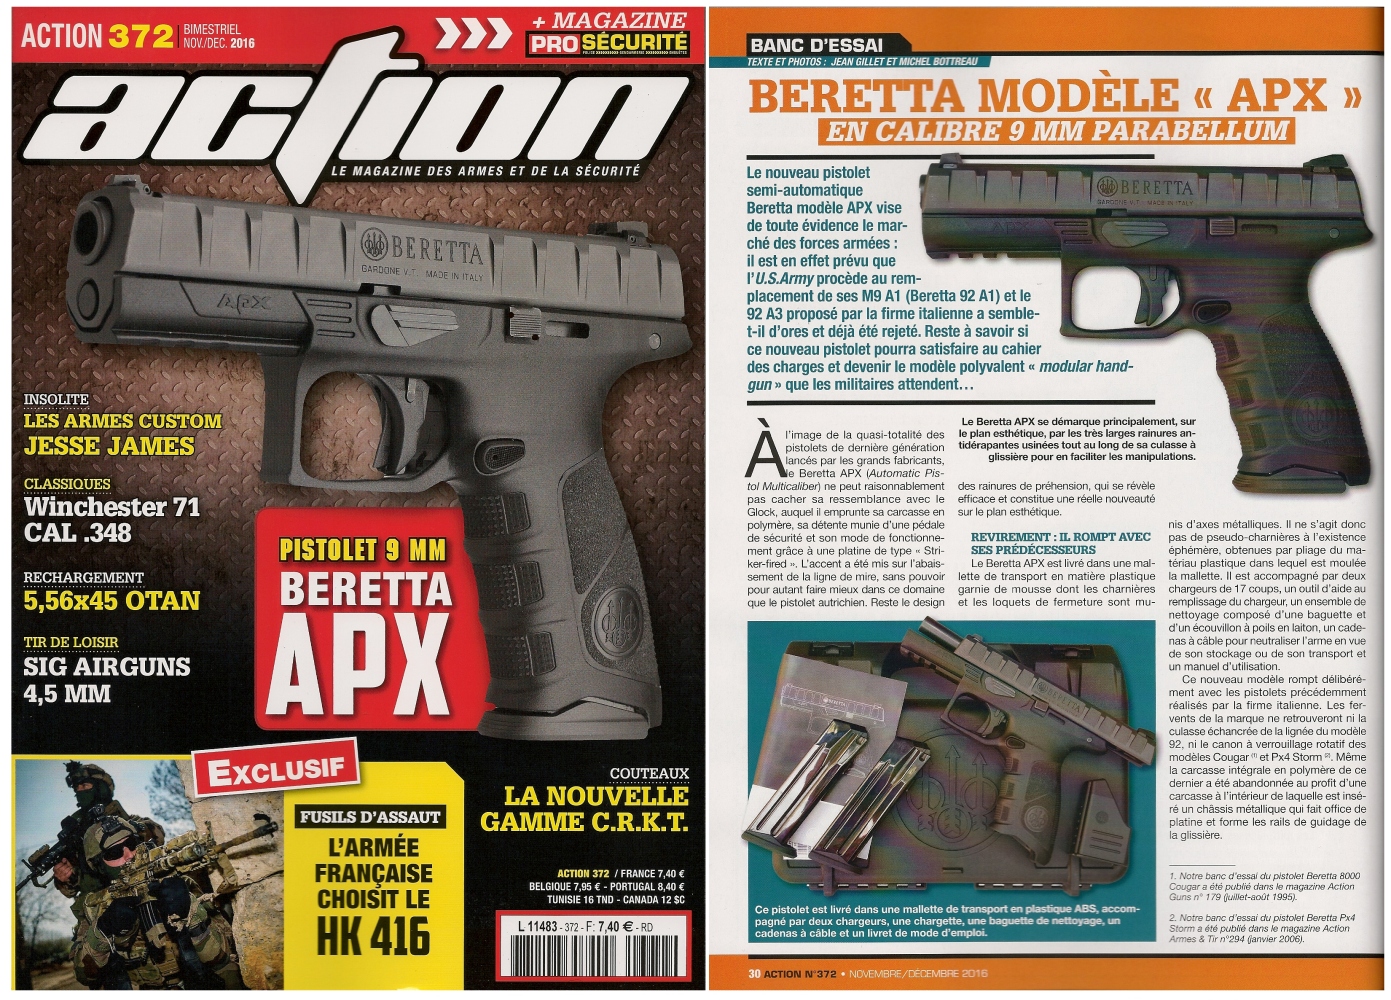 Le banc d’essai du pistolet Beretta modèle APX a été publié sur 6 pages dans le magazine Action Guns n°372 (novembre-décembre 2016). 